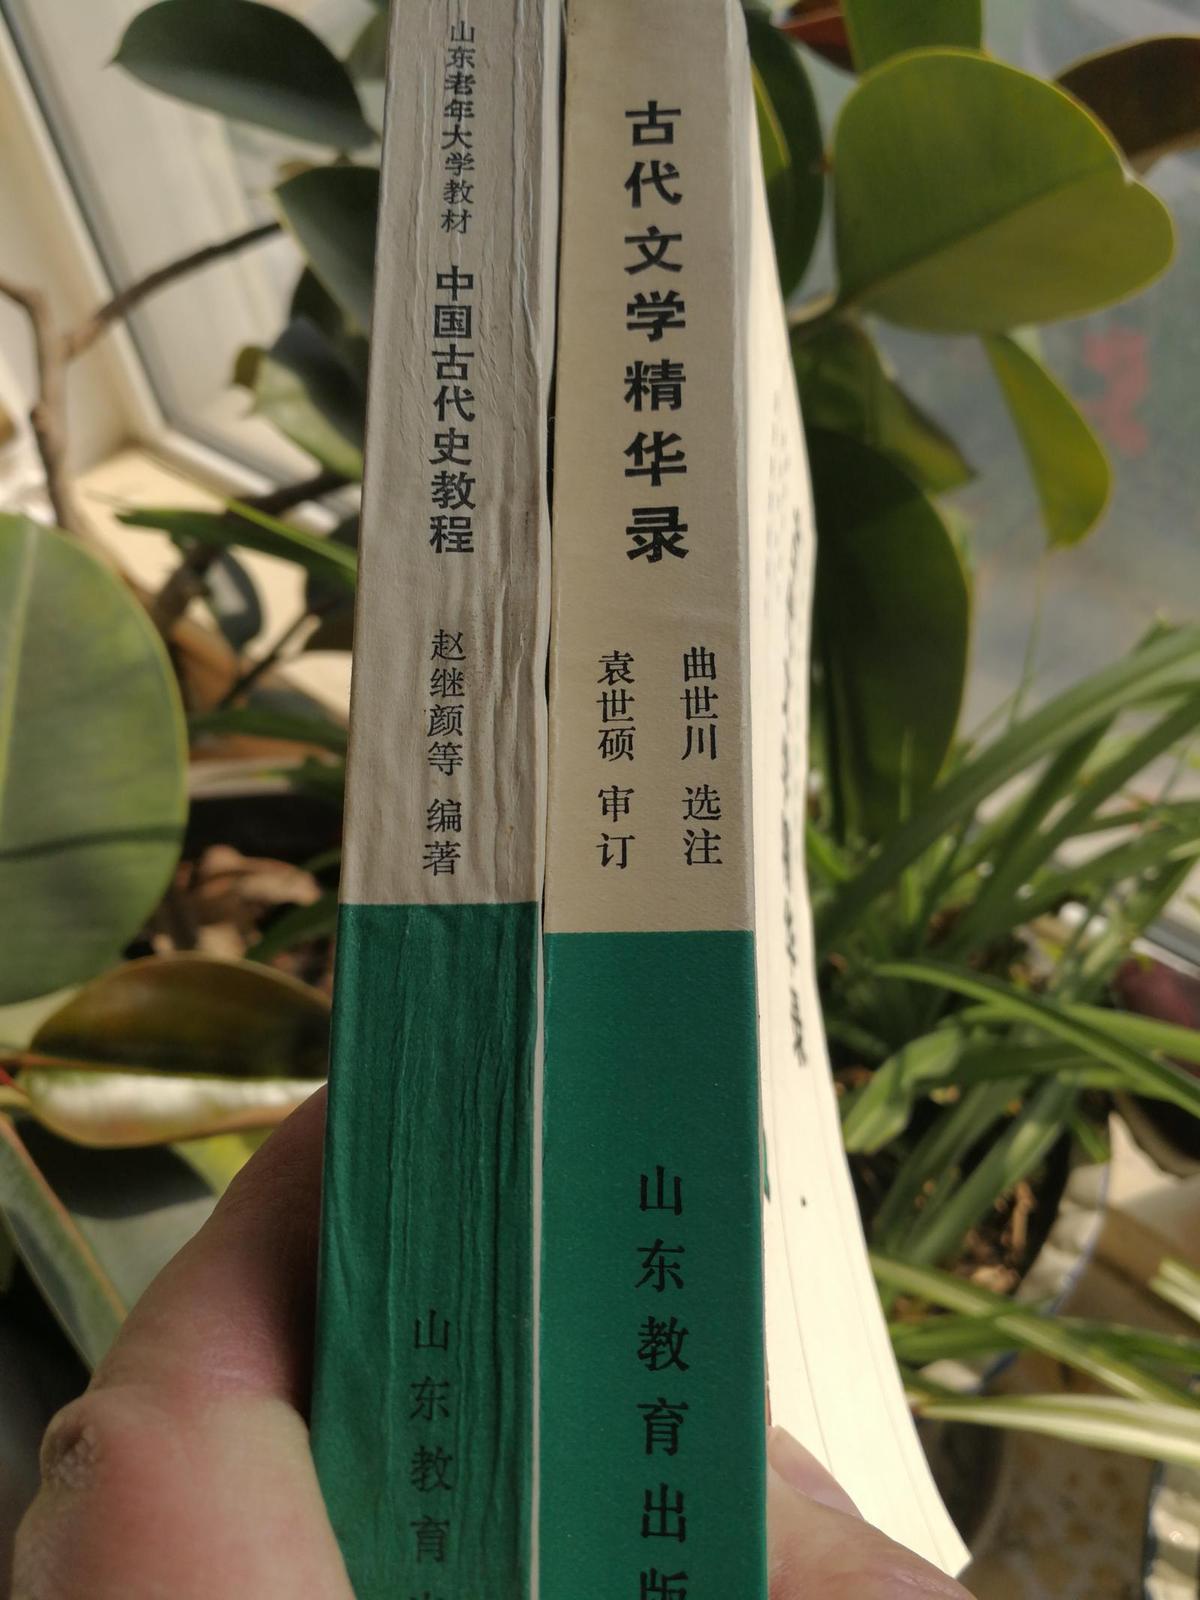 《古代文学精录/中国古代史教程》/袁世硕审订